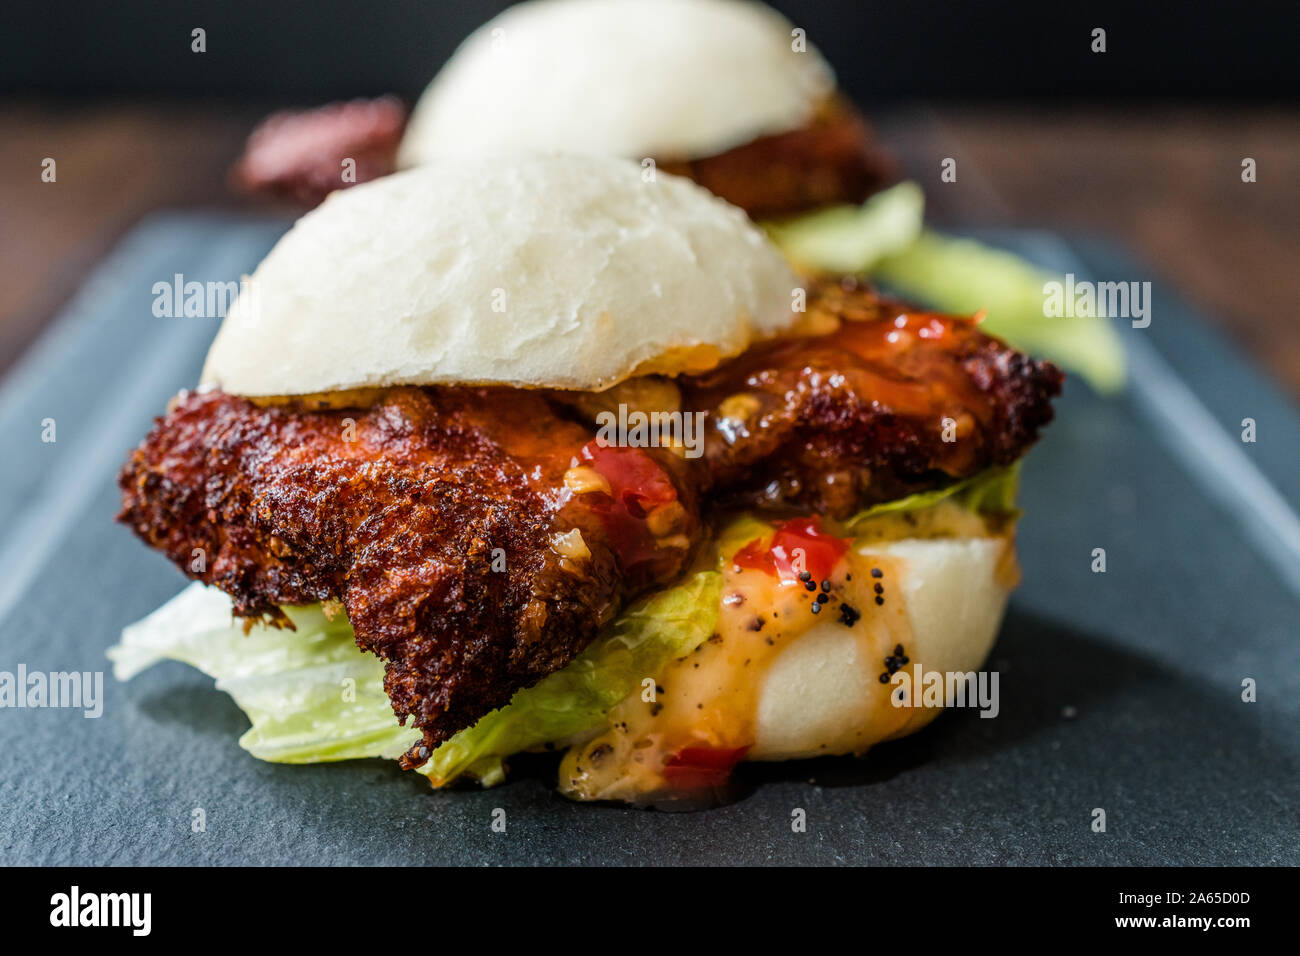 Sándwich de pollo desmechado fotografías e imágenes de alta resolución -  Página 2 - Alamy